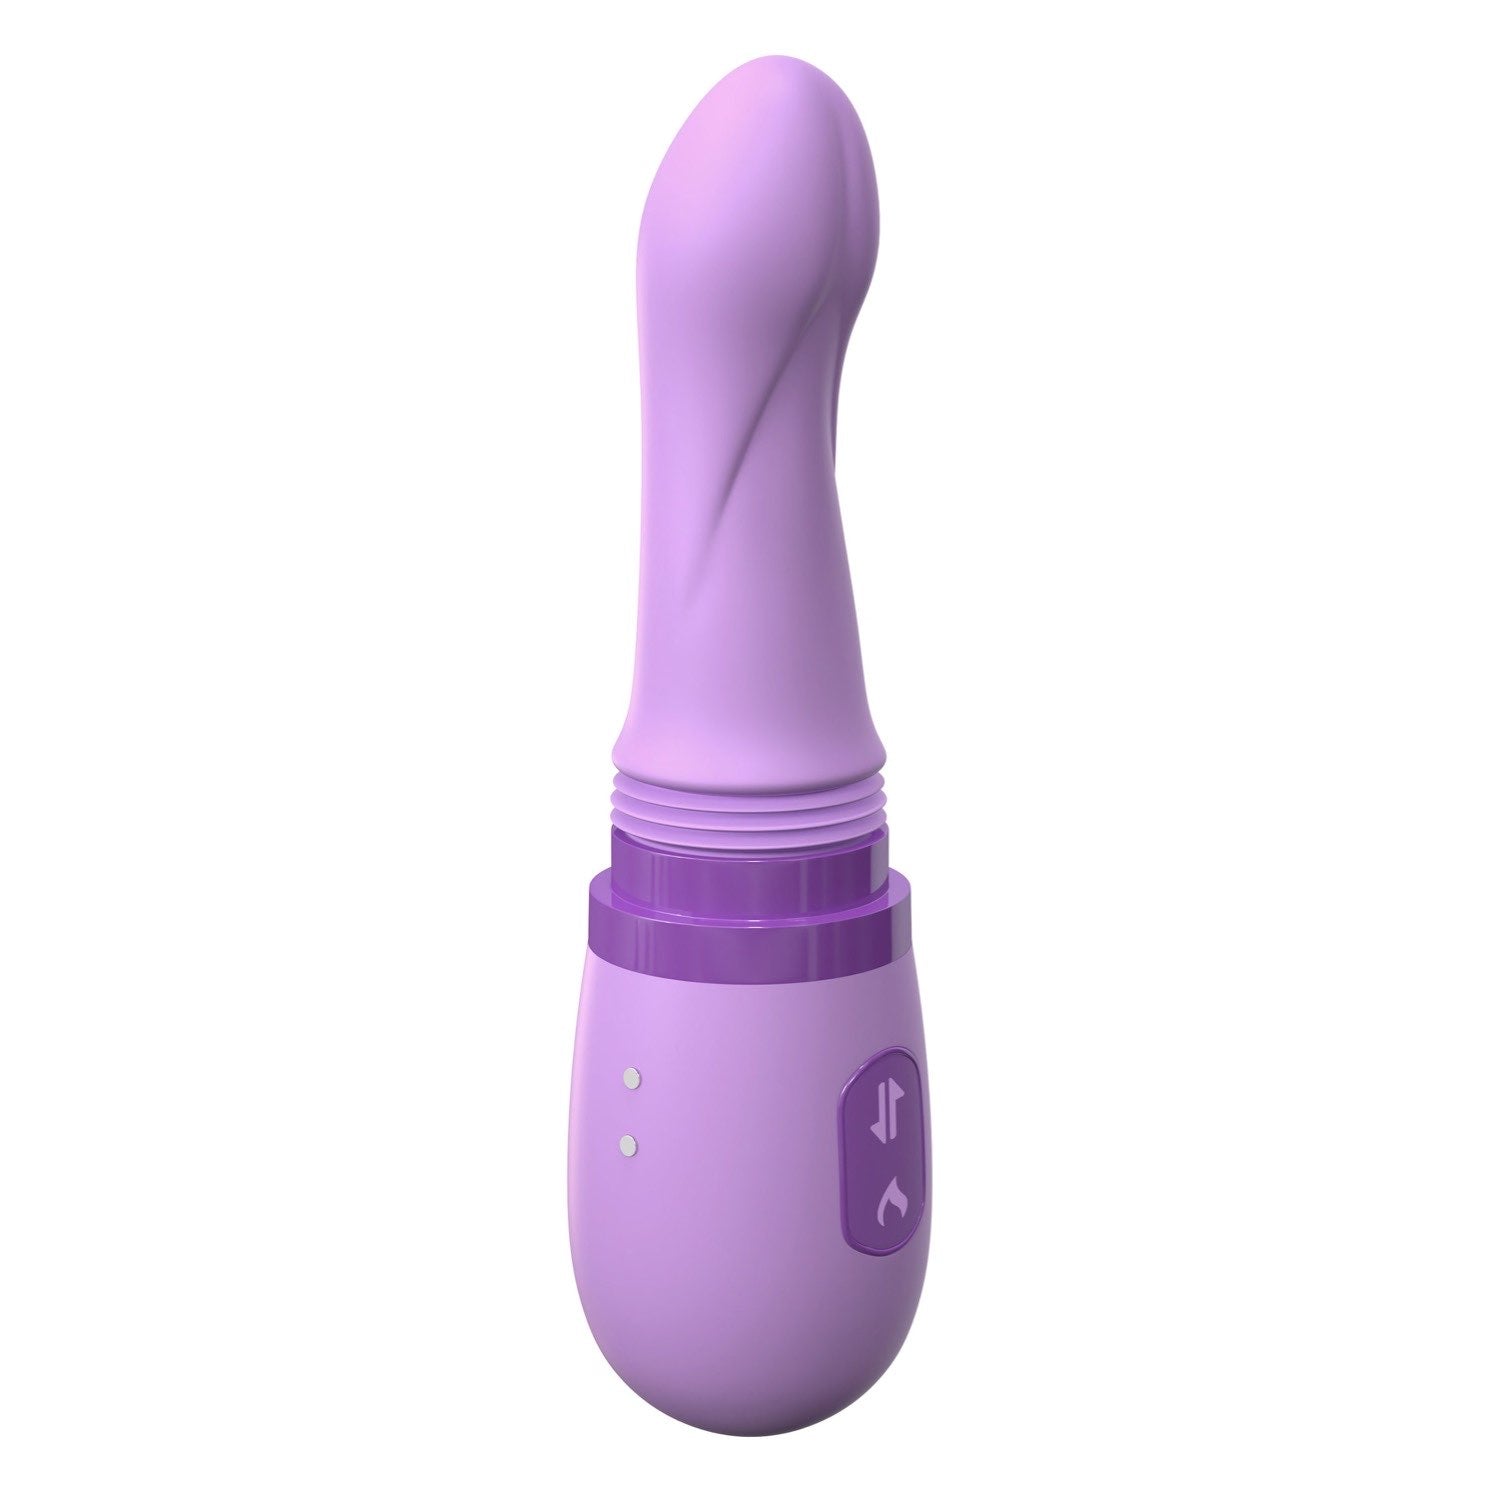 为她幻想 个人性爱机器 - 紫色 21.3 厘米（8.5 英寸）USB 可充电推力和旋转振动器 by Pipedream